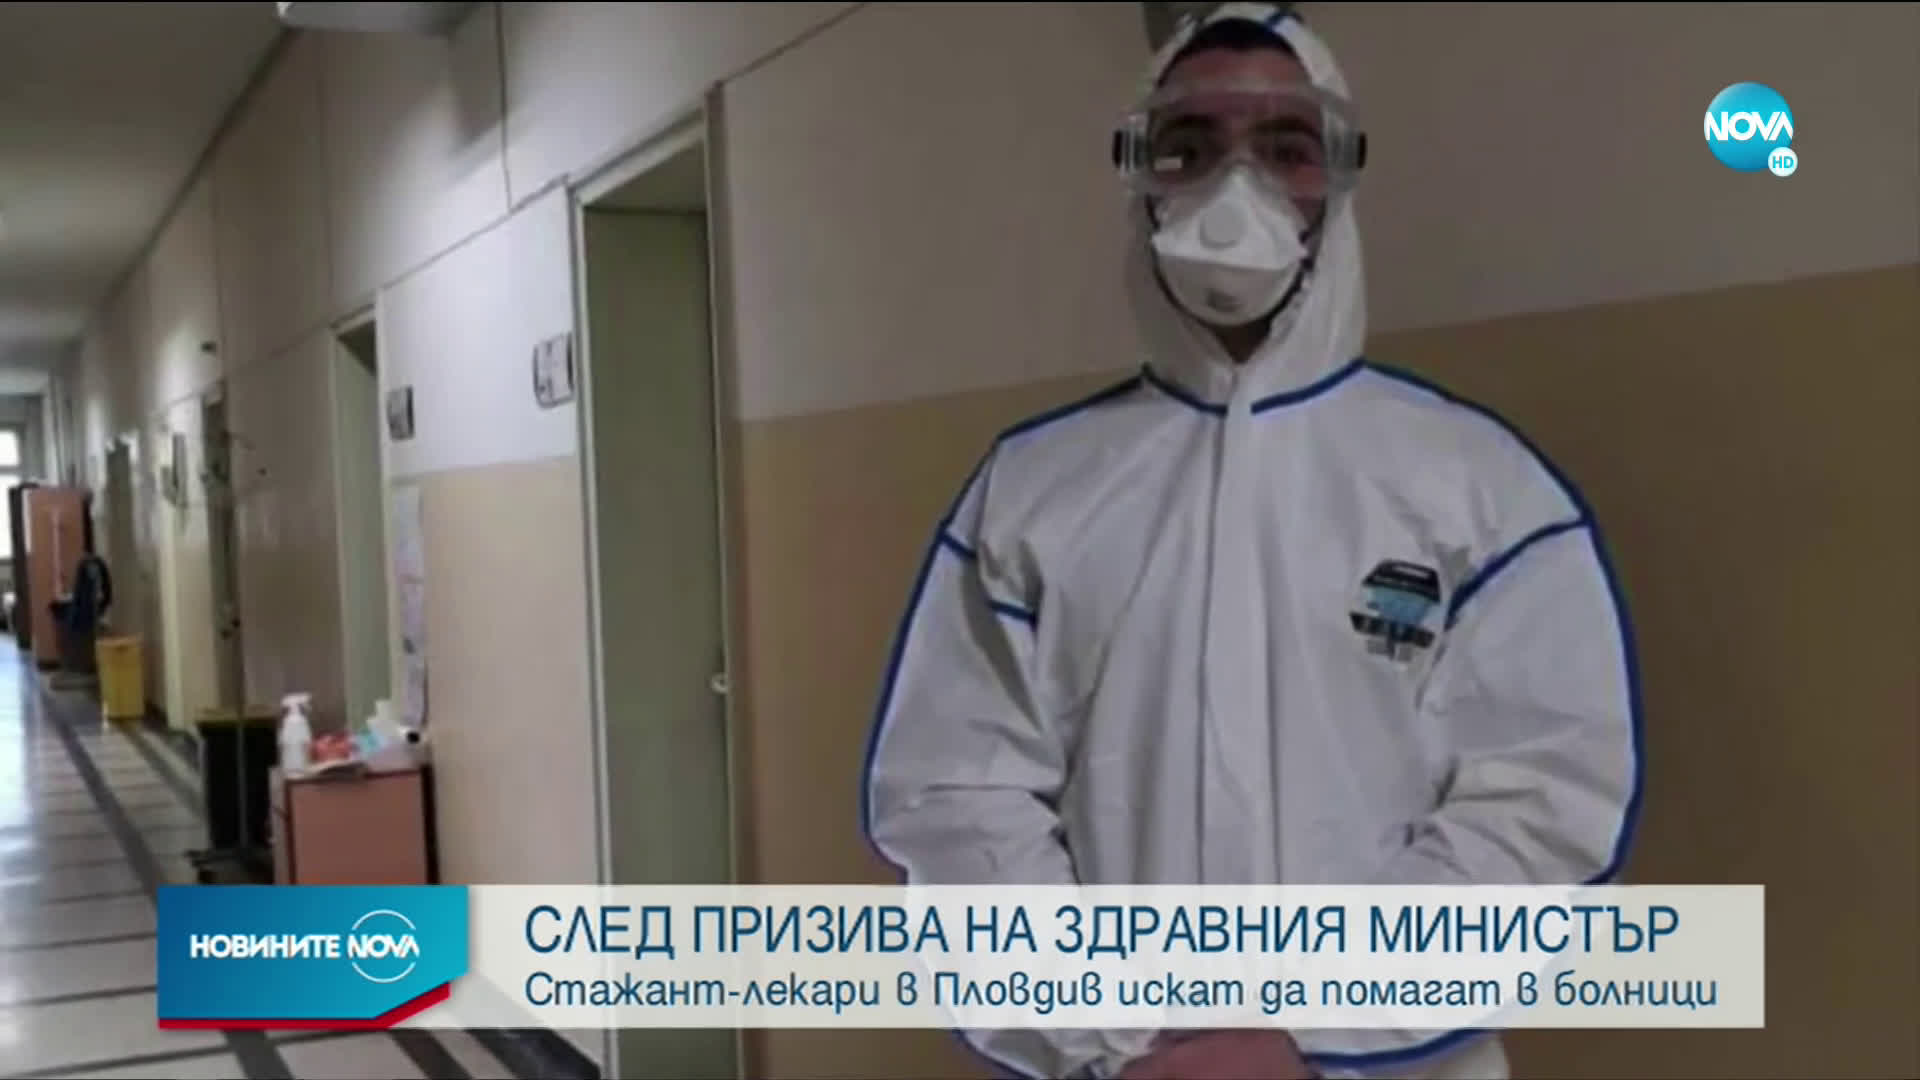 Студенти от Пловдив влизат в битката с вируса